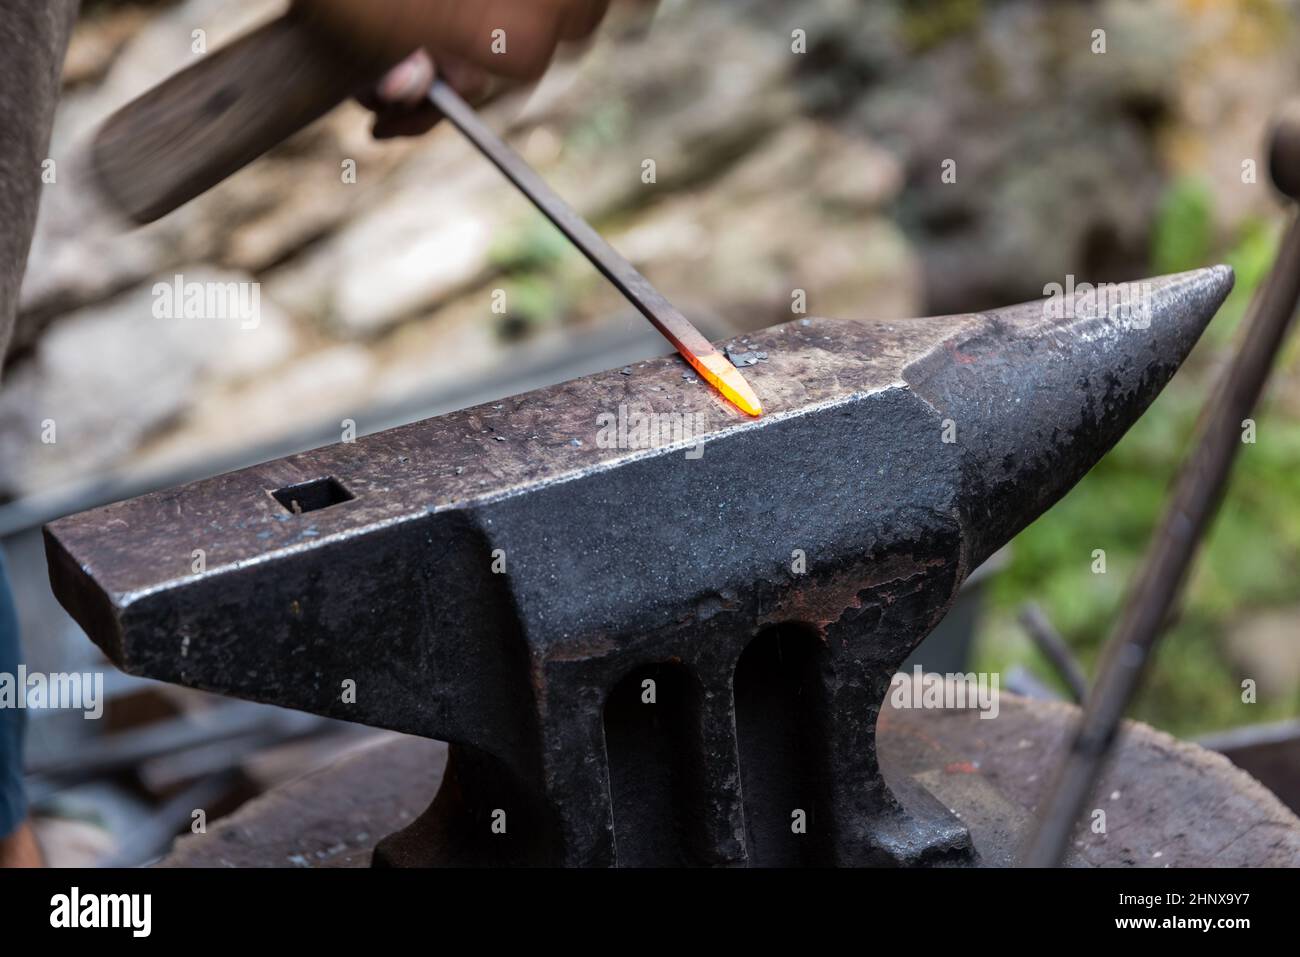 Herreros - artesanía antigua de metalurgia en el yunque, detalle Foto de stock